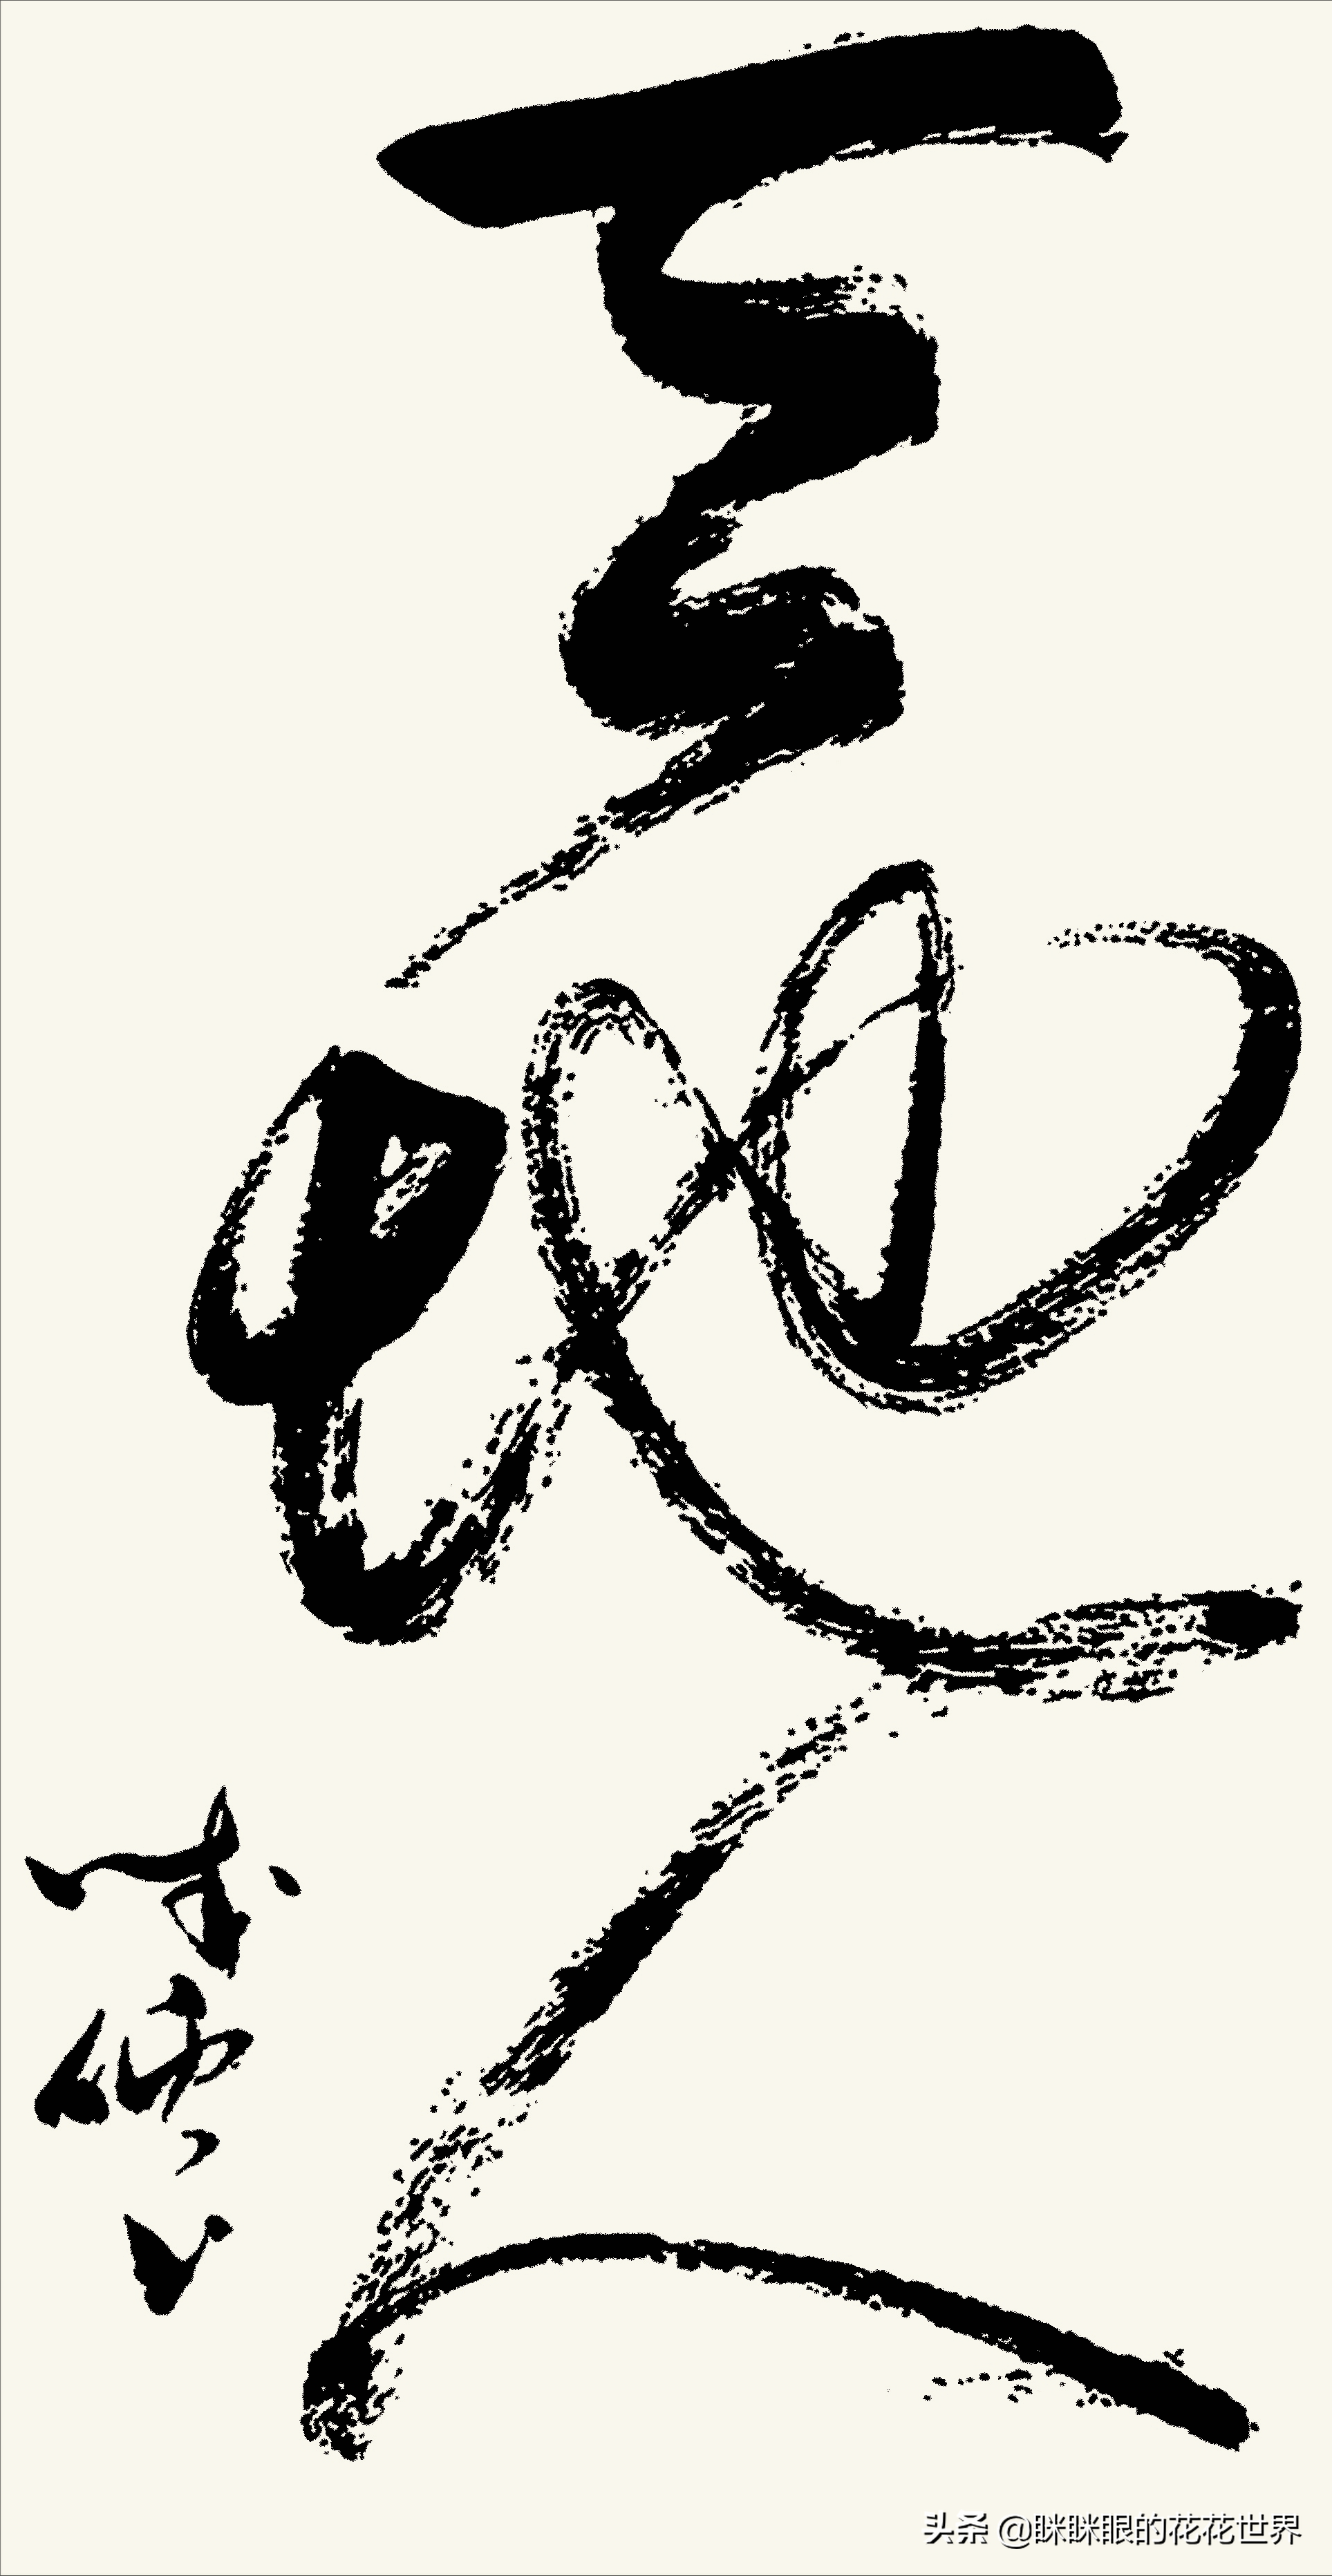 李成儒“鬼画符”书法引热议，笔墨飞扬跋扈，却被网友评为江湖体